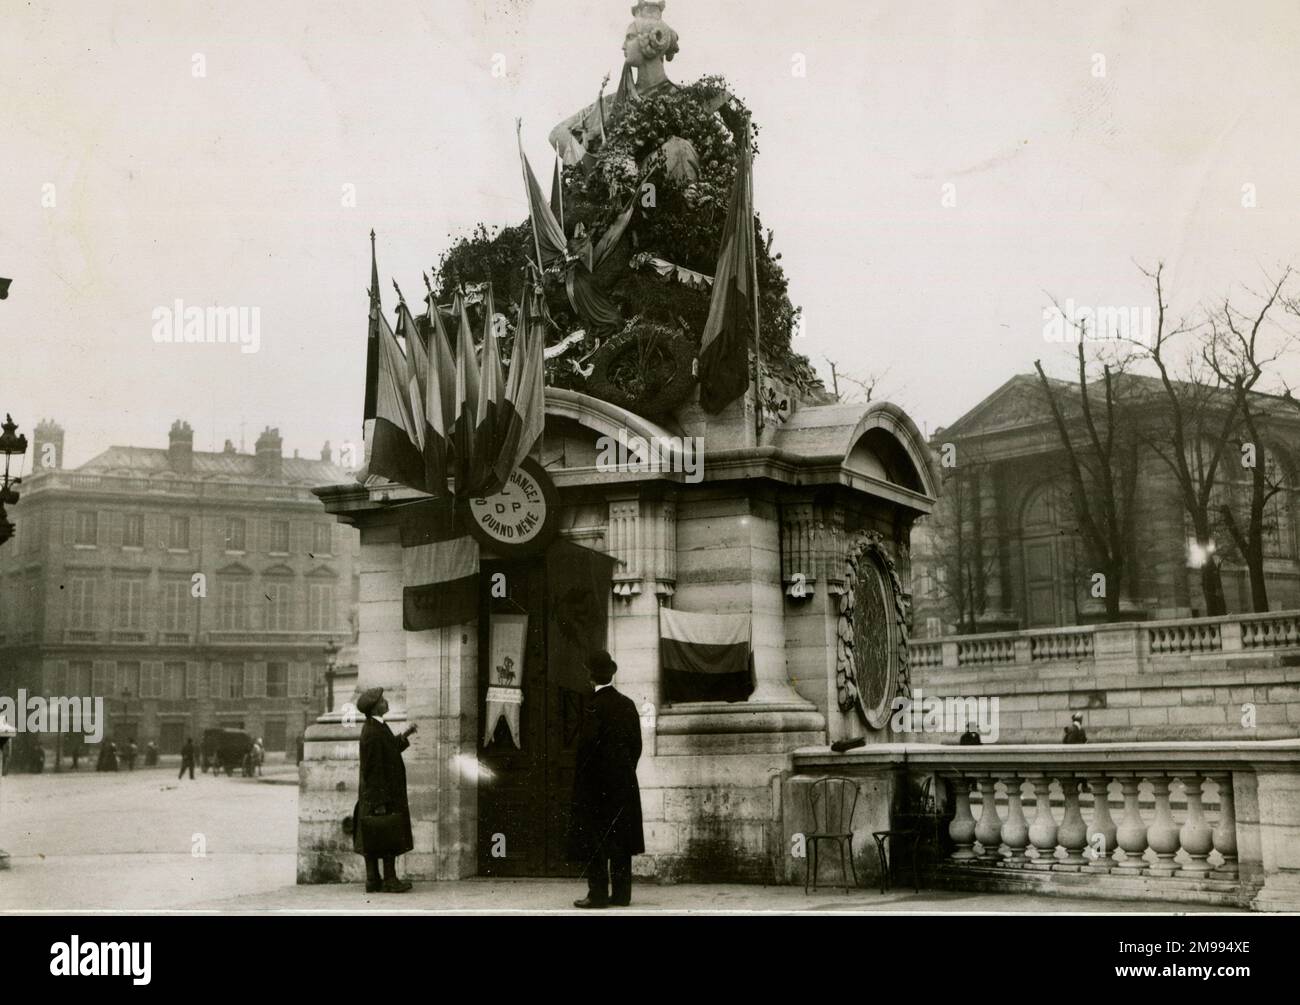 Il Memoriale di Strasburgo in Place de la Concorde, Parigi, Francia, il 14 novembre 1914, nella prima parte della prima guerra mondiale, decorato con bandiere e corone. Il memoriale risale alla guerra franco-prussiana. Foto Stock